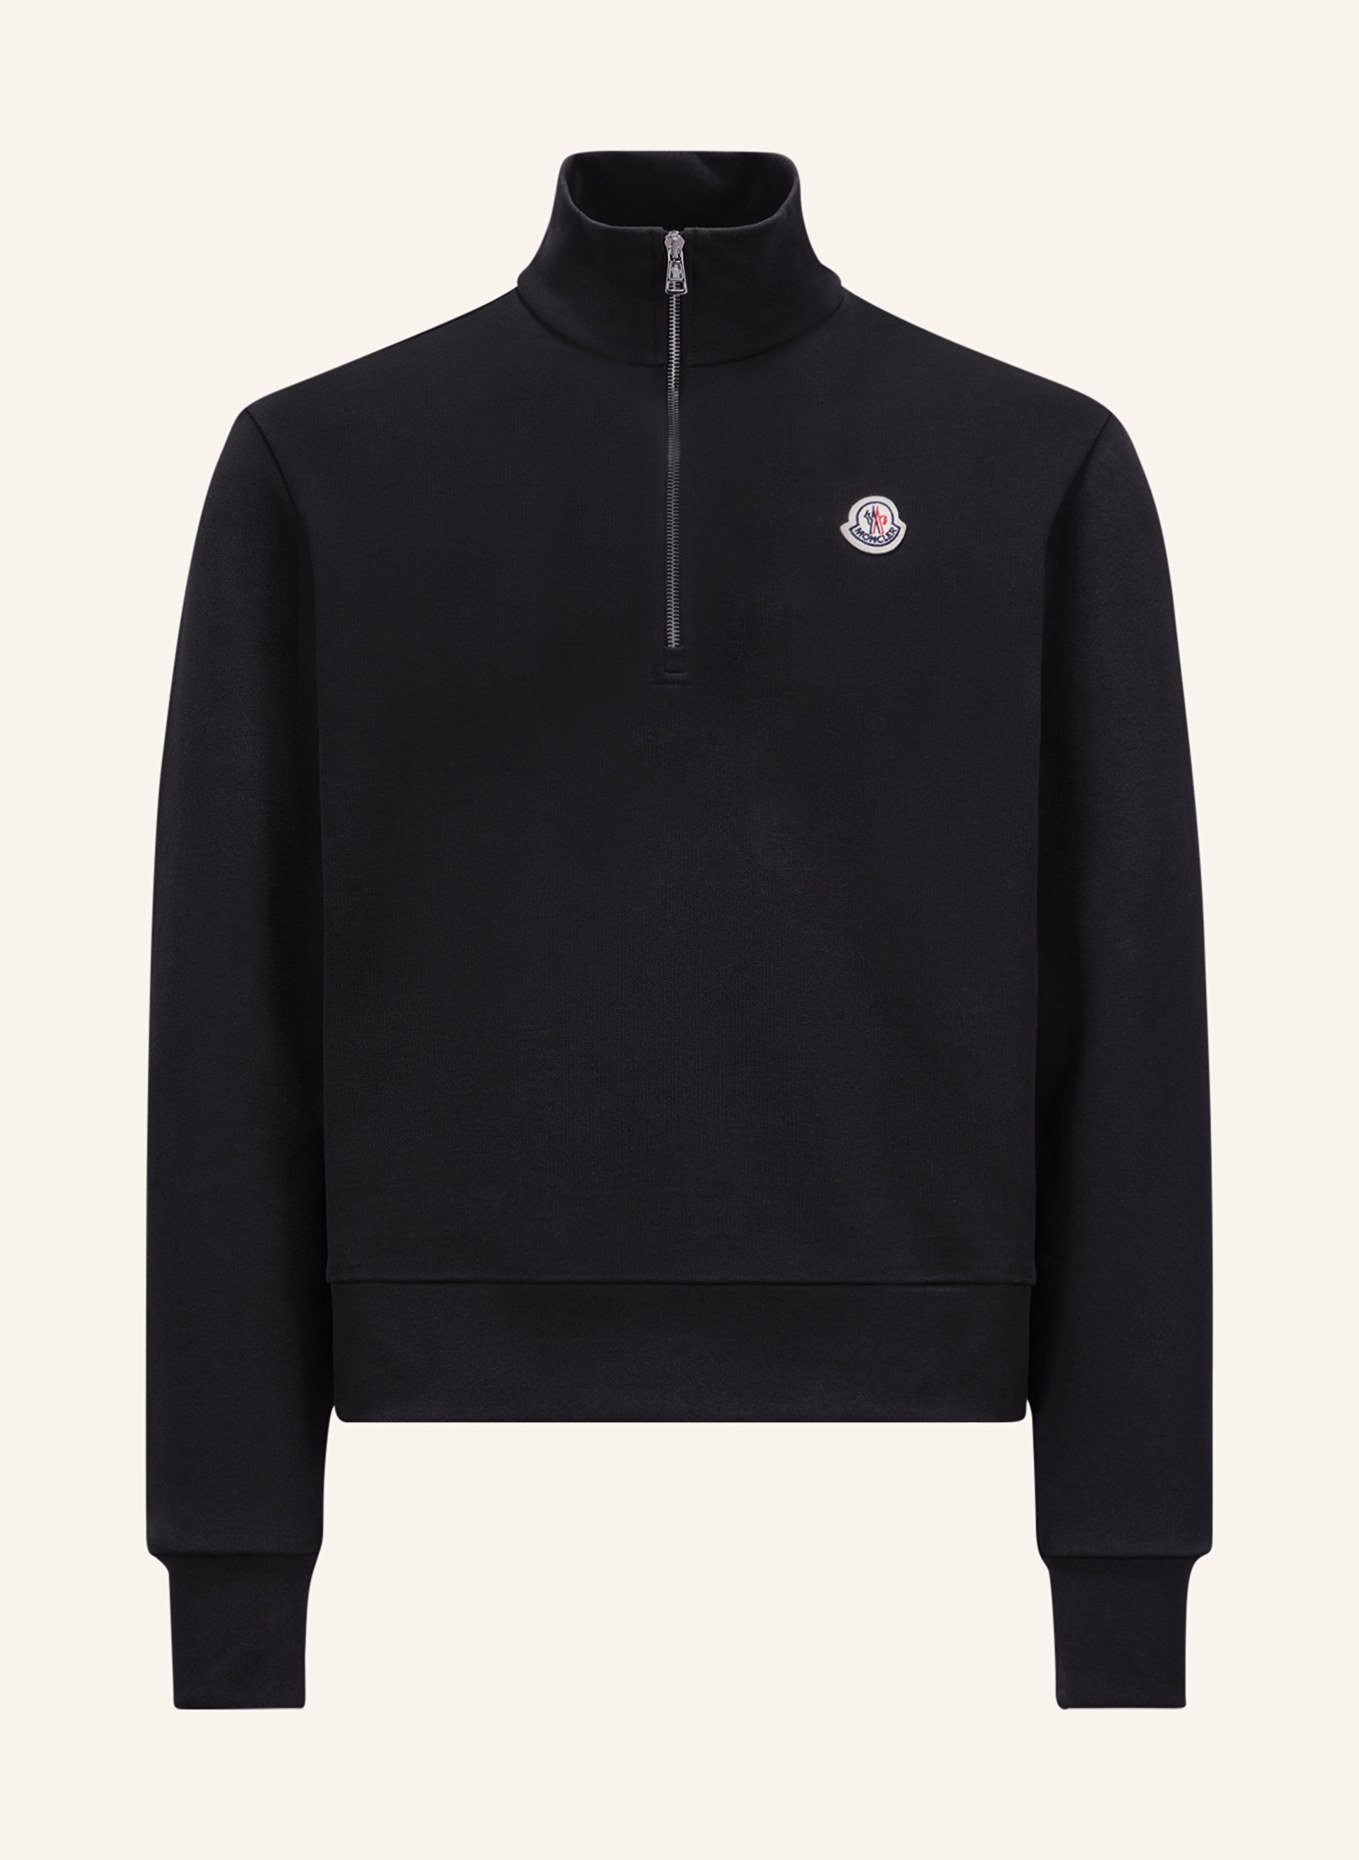 MONCLER Half-zip sweater in sweatshirt fabric, Color: BLACK (Image 1)